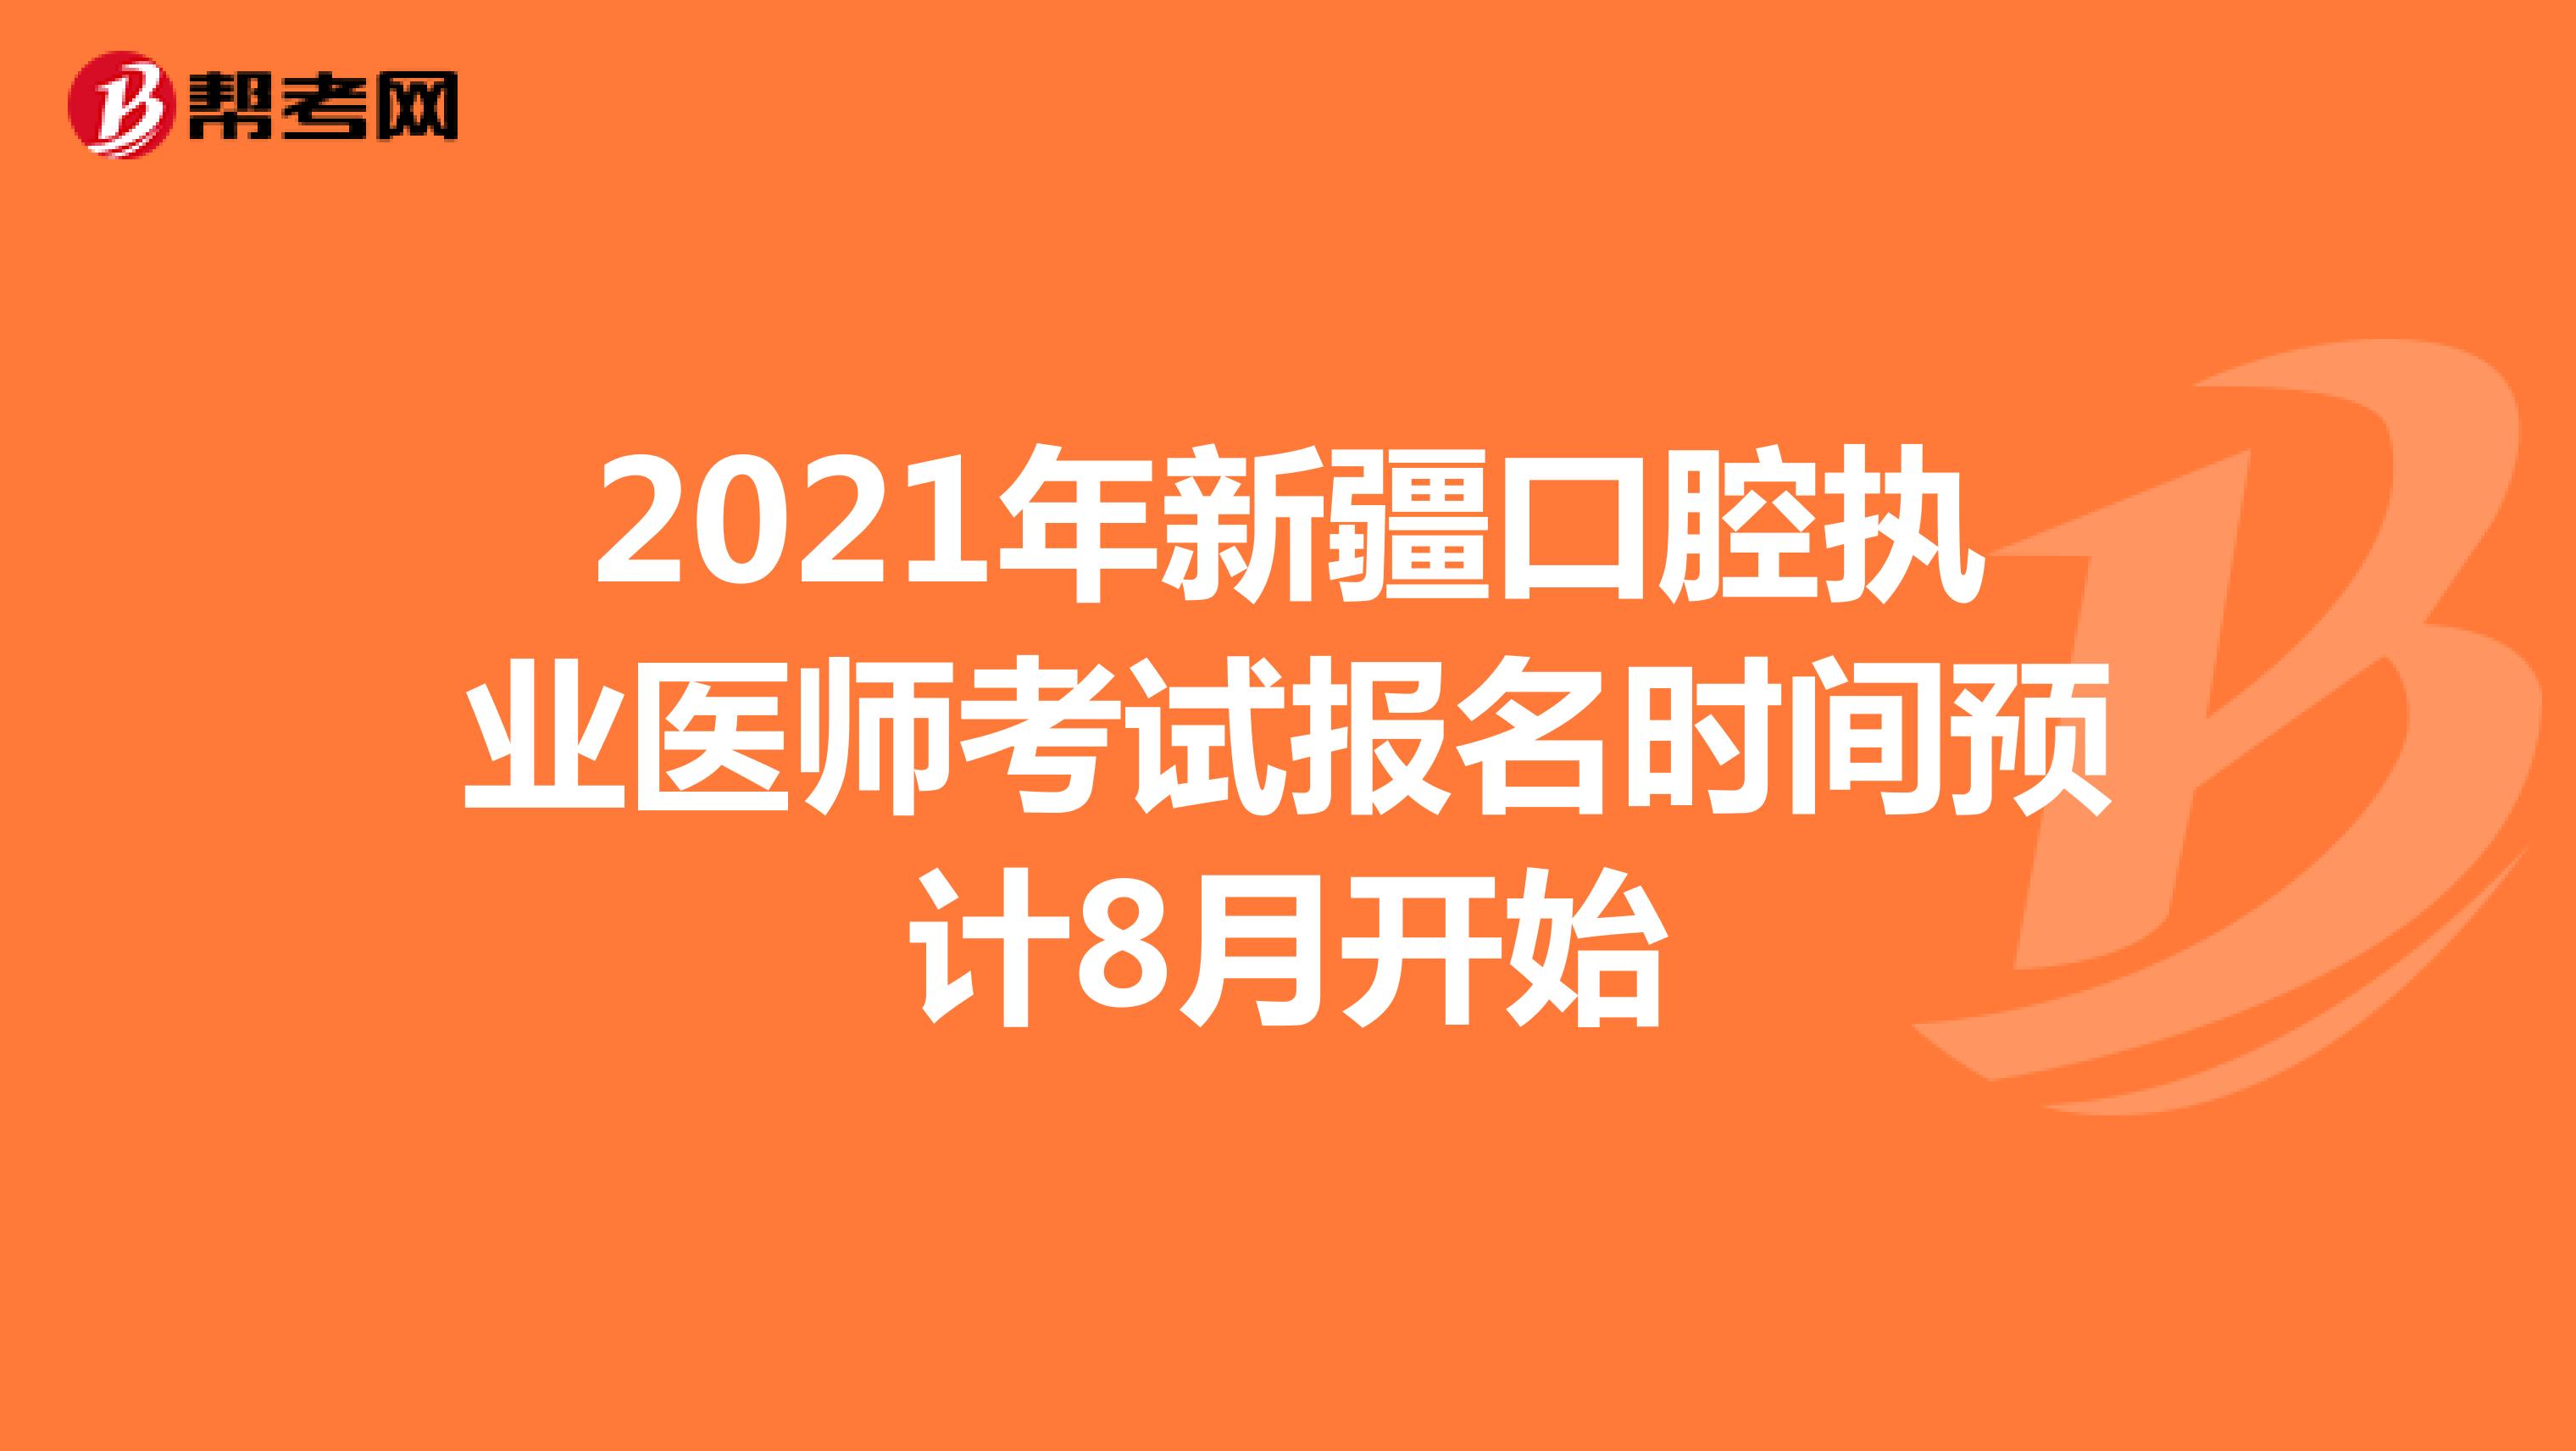 2021年新疆口腔执业医师考试报名时间预计8月开始